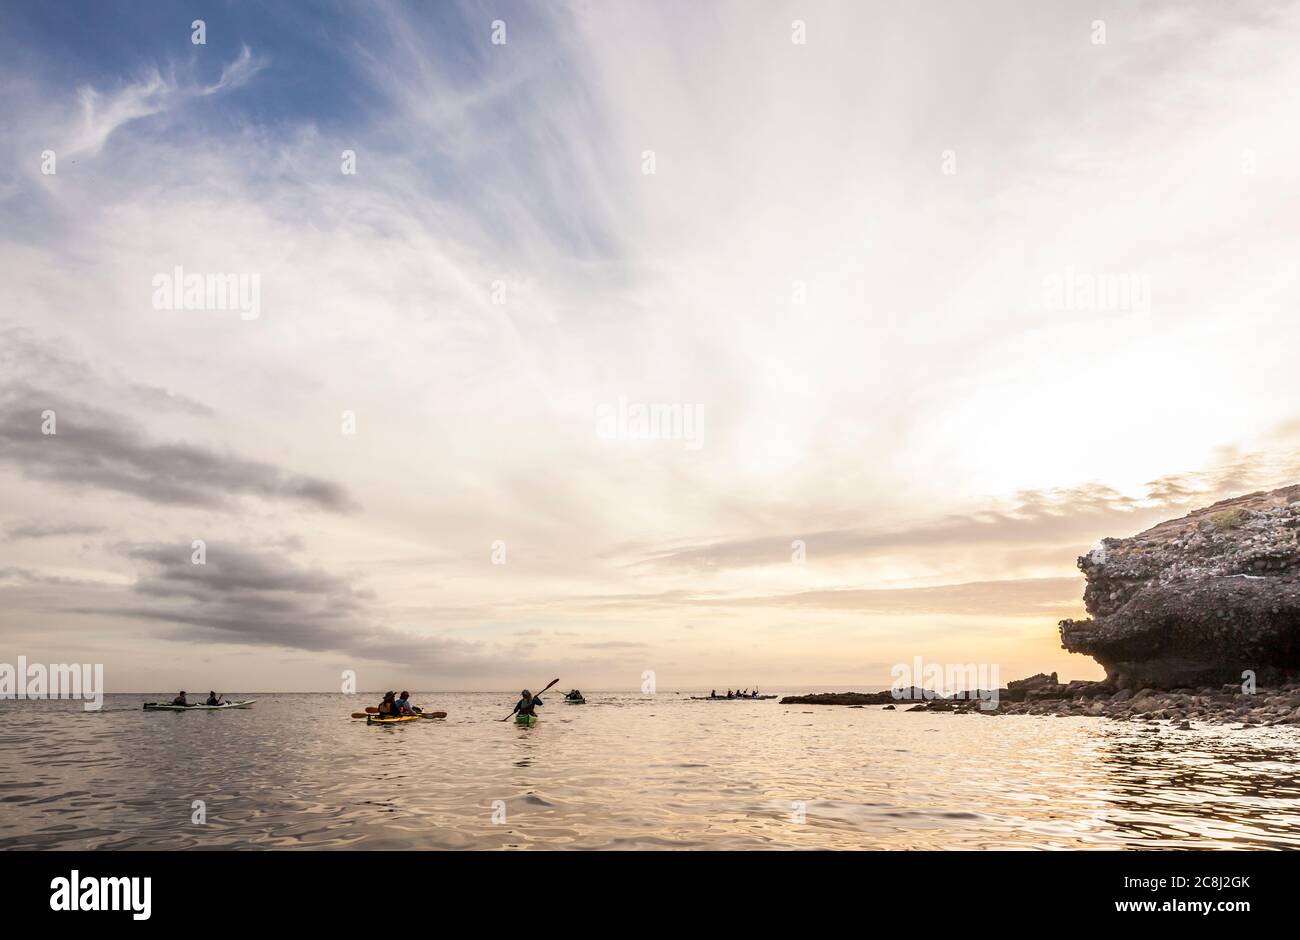 Kayaker silhouettes, Isla Espiritu Santo, BCS, Mexico. The Gulf of California Stock Photo